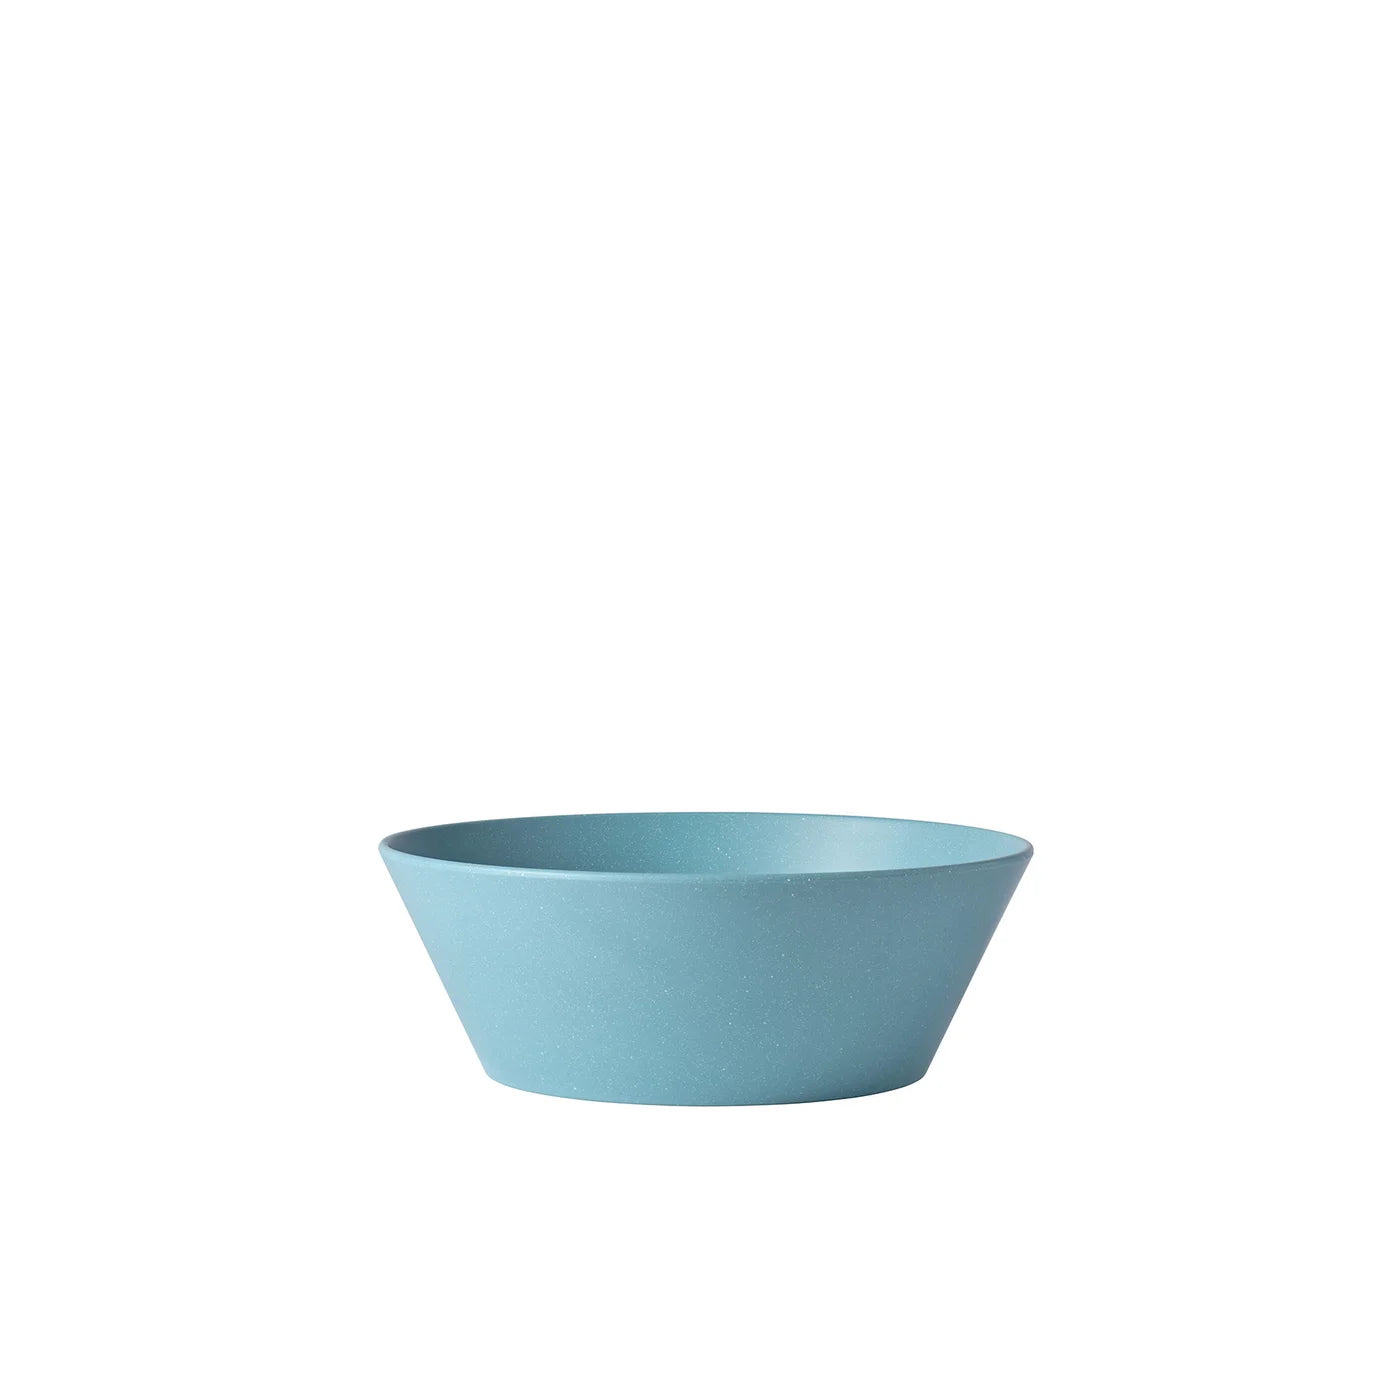 Serving bowl Bloom 1.5 l